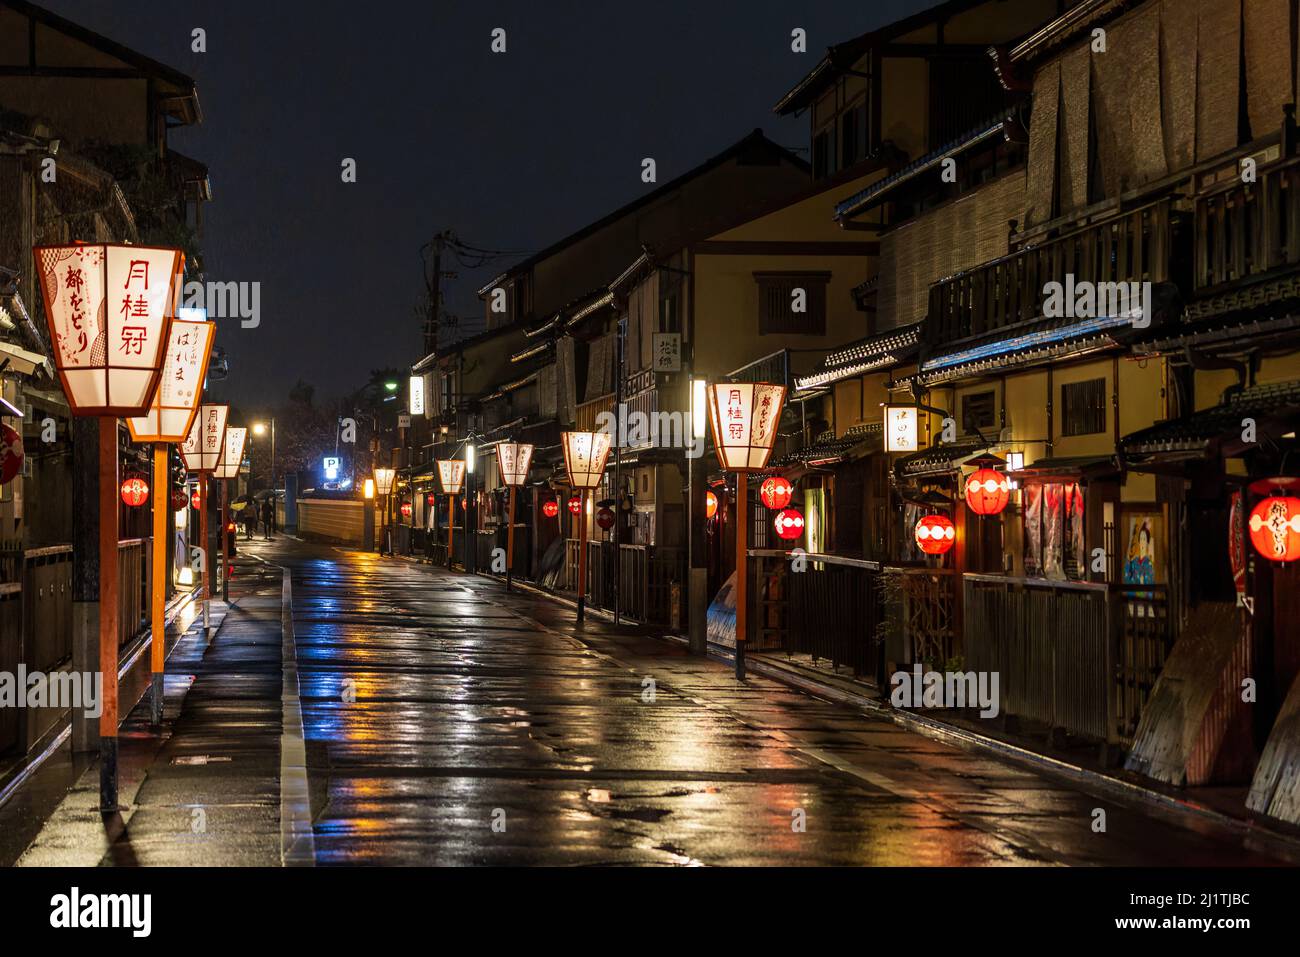 Faroles japoneses iluminan la calle vacía en el distrito histórico de Gion después de la lluvia Foto de stock